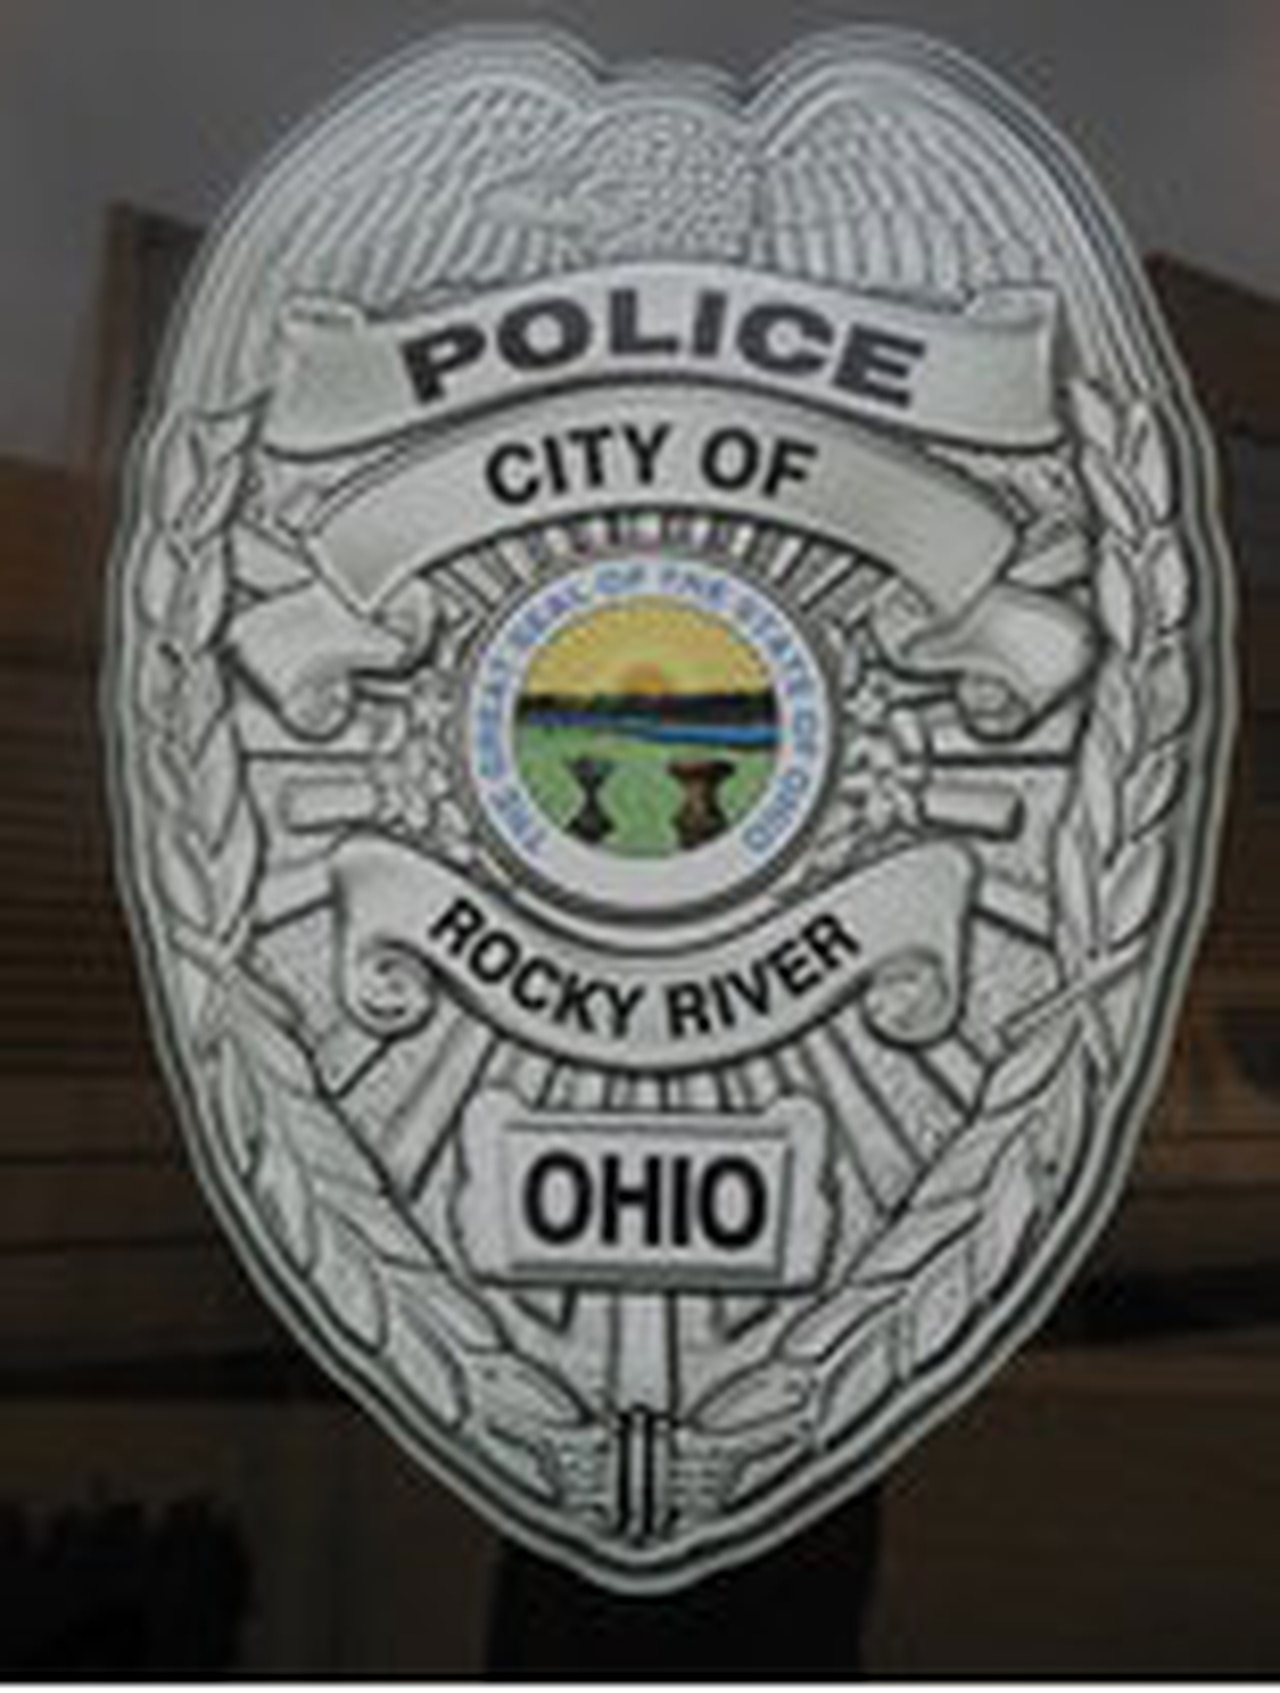 Rocky River police badge